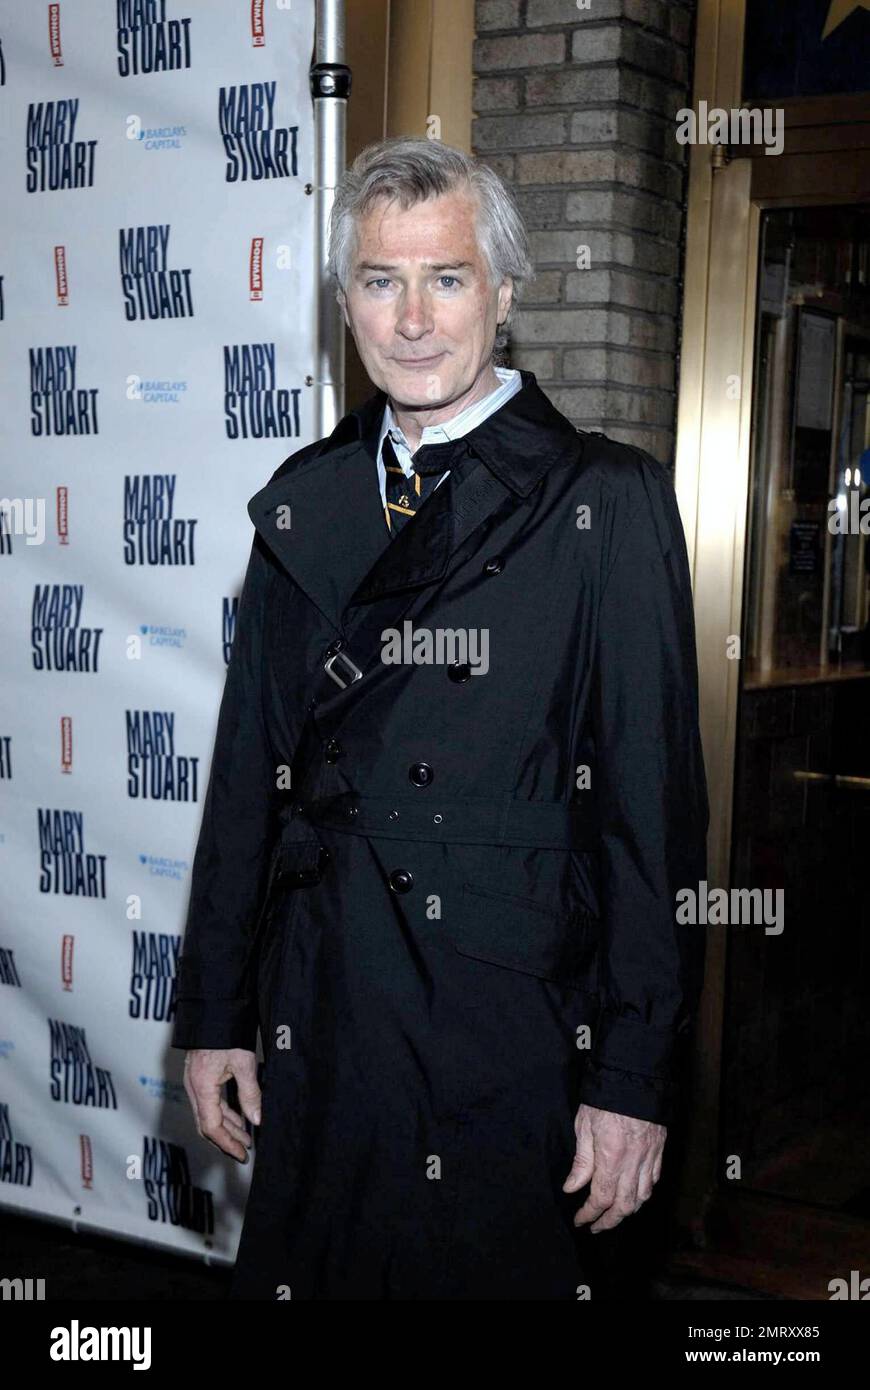 John Patrick Shanley nimmt an der Eröffnungsnacht von „Mary Stuart“ im Broadhurst Theatre Teil. New York, NY. 4/19/09. Stockfoto